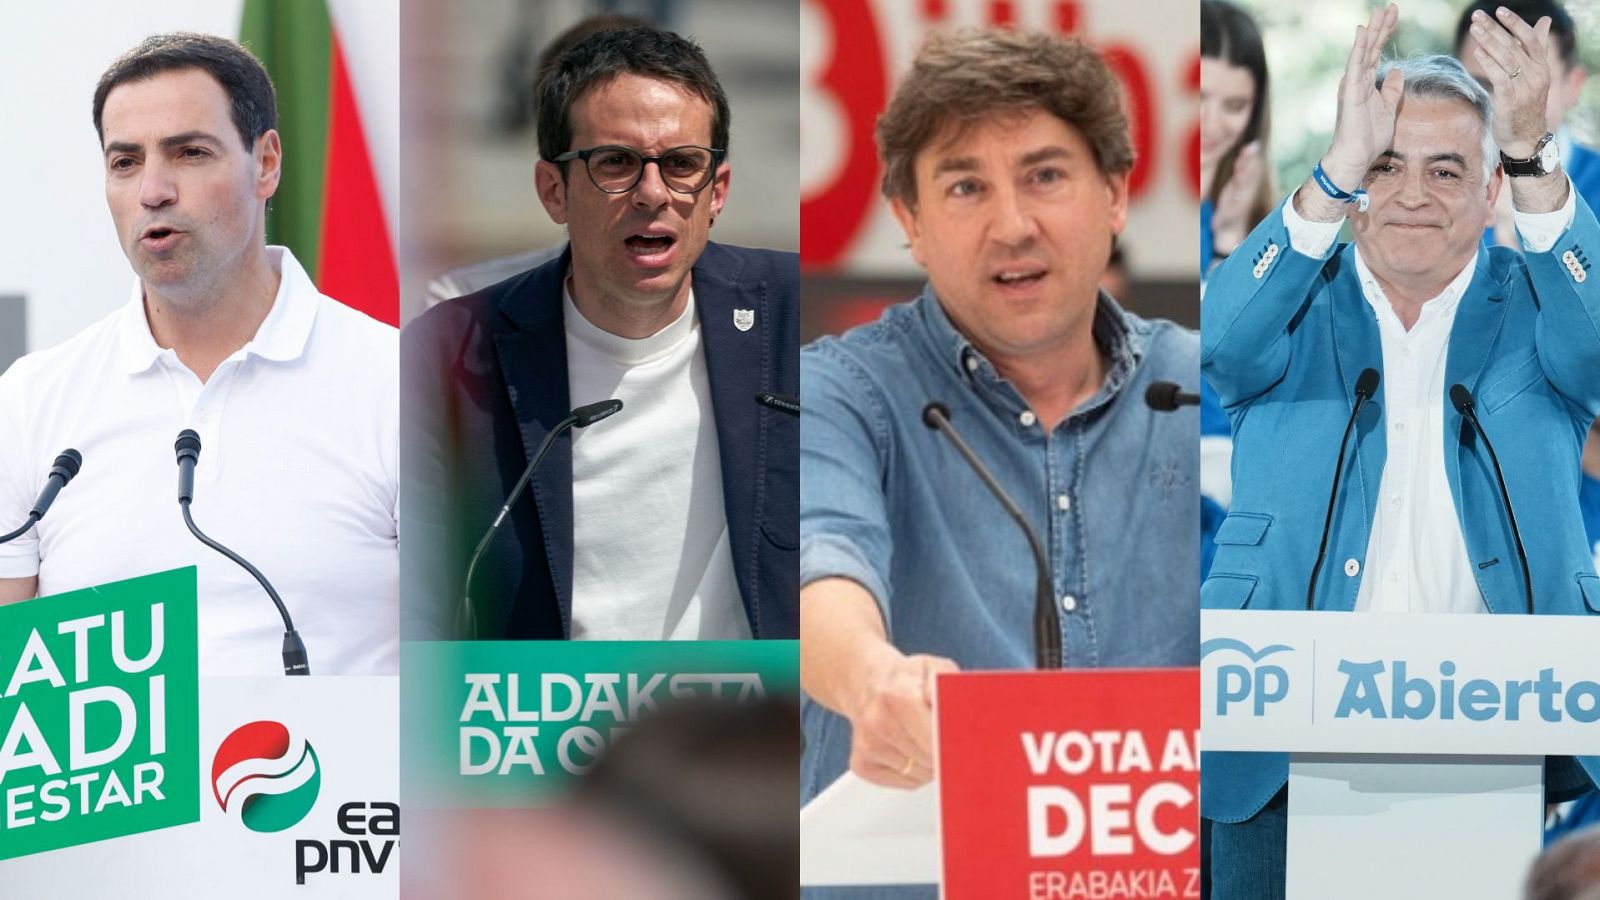 La campaña vasca entra en la recta final con un debate de alto voltaje sobre terrorismo, soberanismo o sanidad